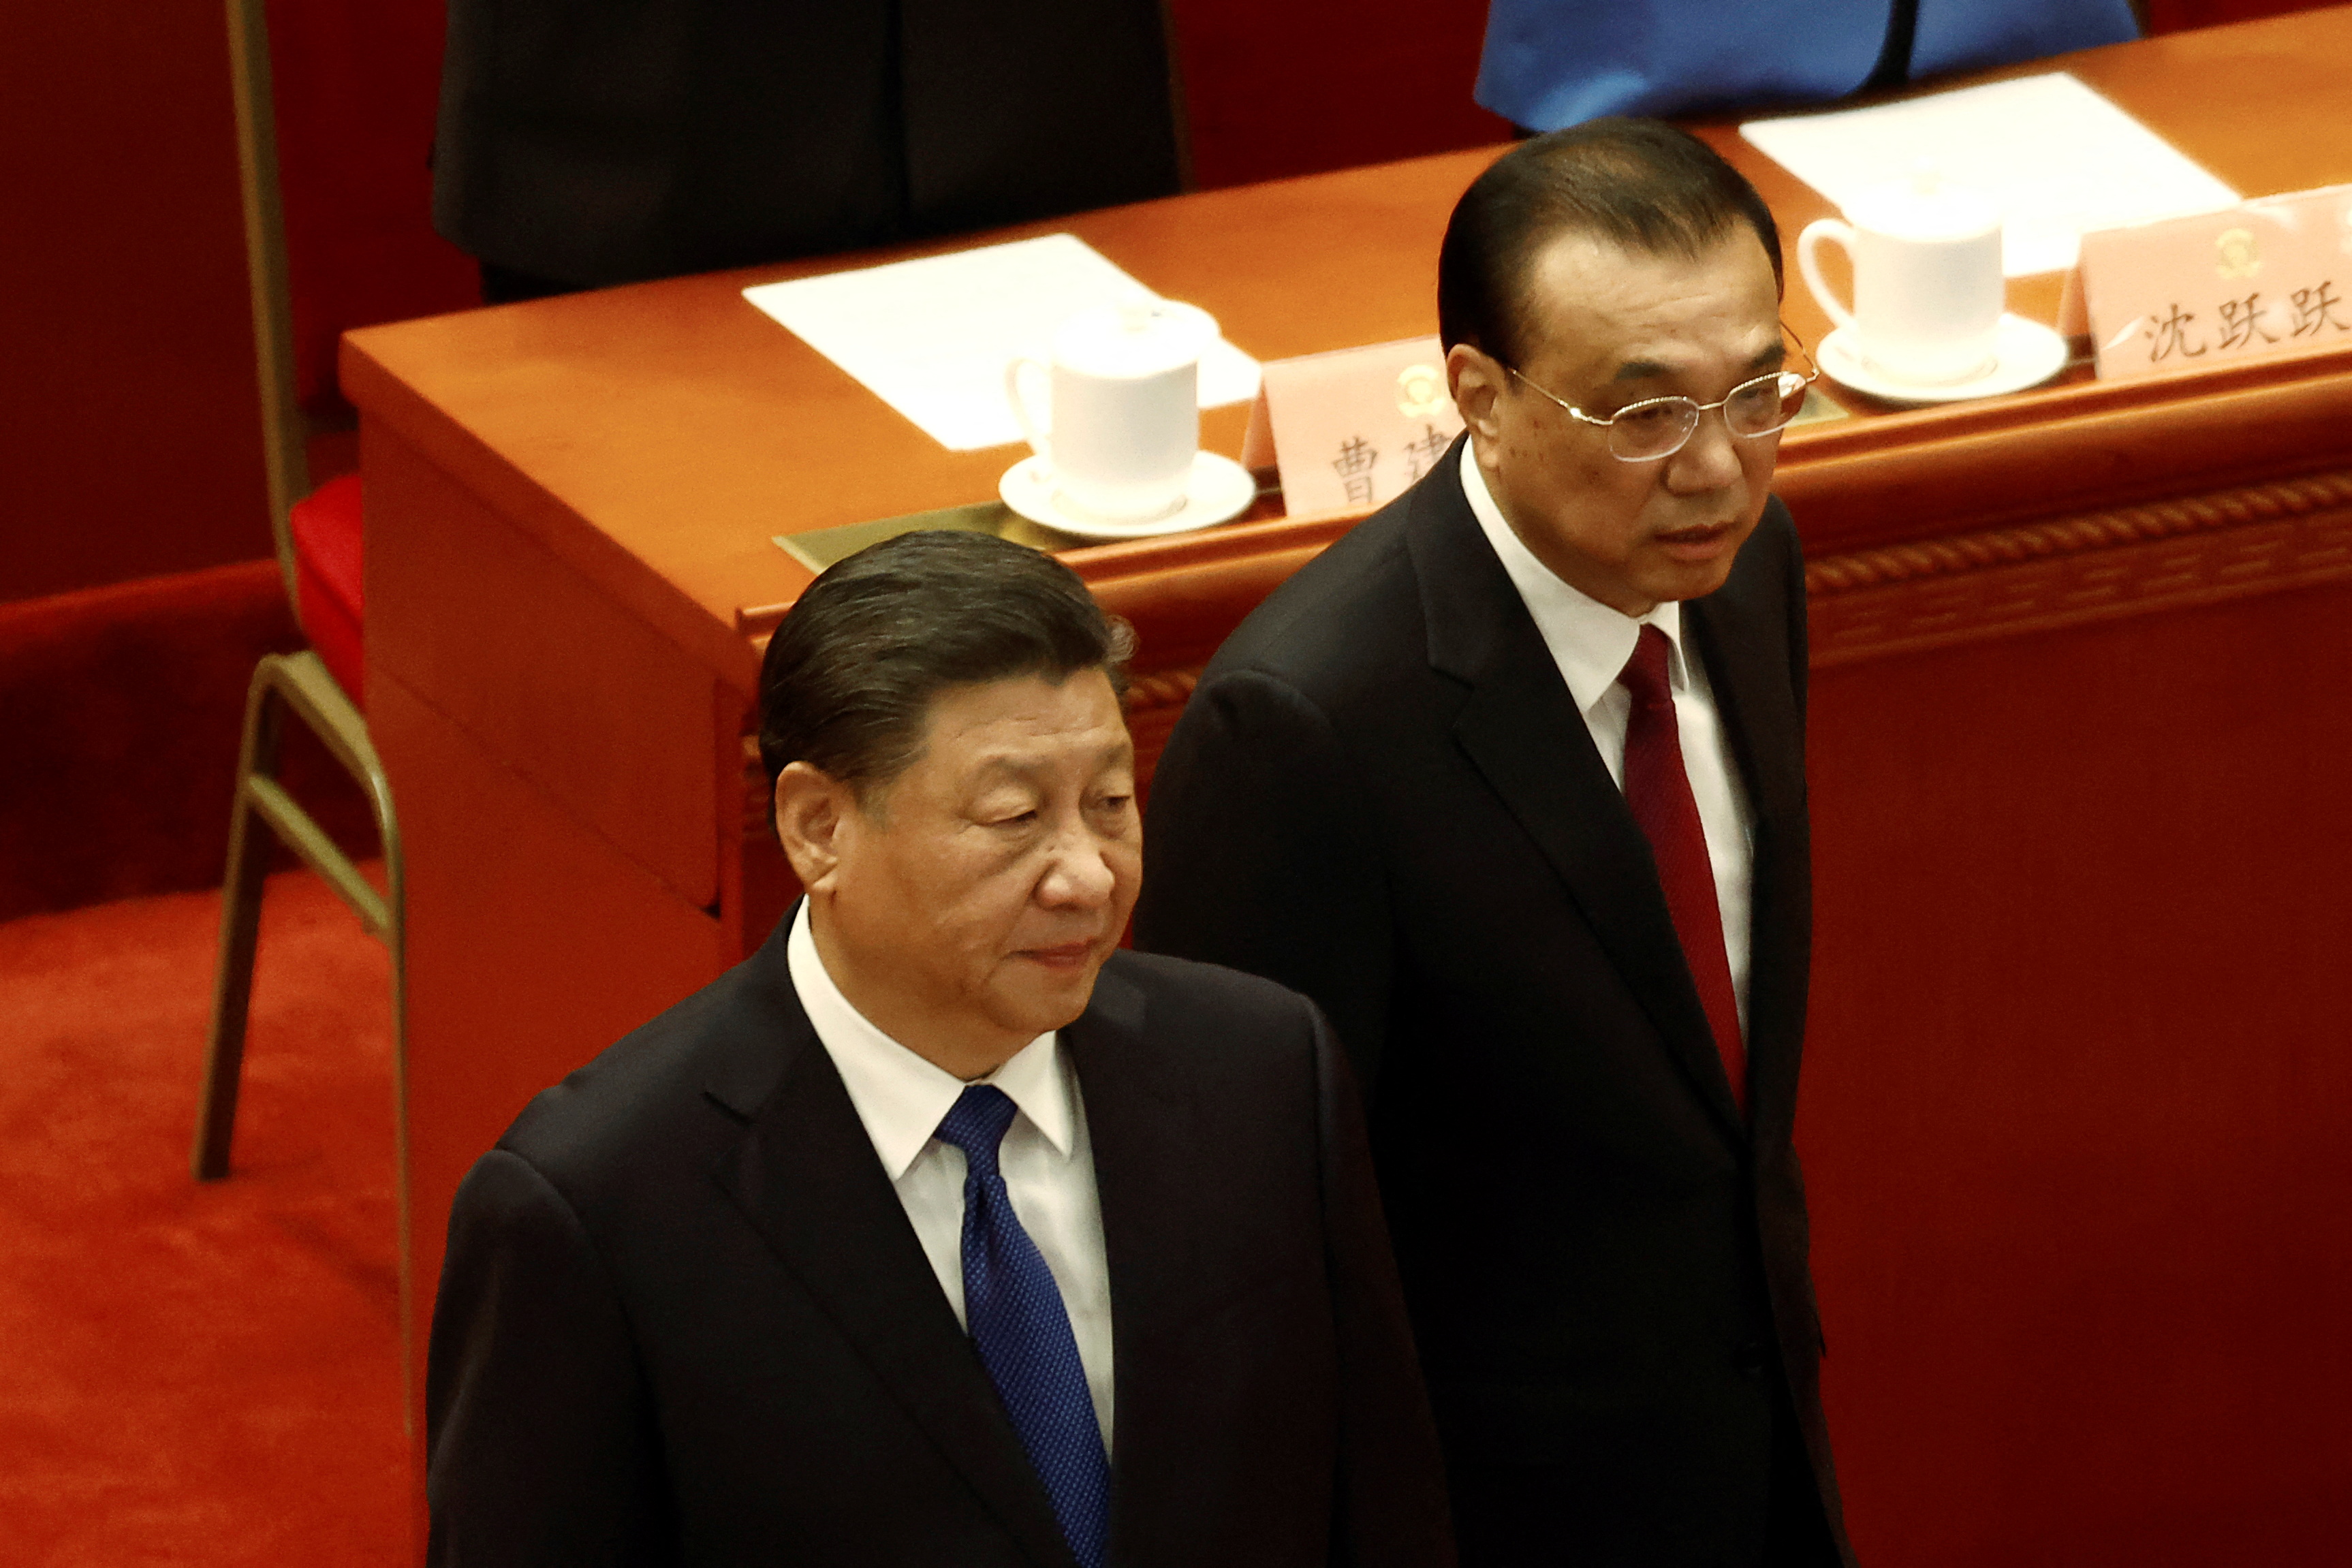 FOTO DE ARCHIVO: El presidente chino Xi Jinping y el primer ministro Li Keqiang llegan a la sesión de clausura de la Conferencia Consultiva Política del Pueblo Chino (CCPPCh) en el Gran Salón del Pueblo en Beijing, China, el 10 de junio de 2022.  REUTERS/Carlos García Rawlins